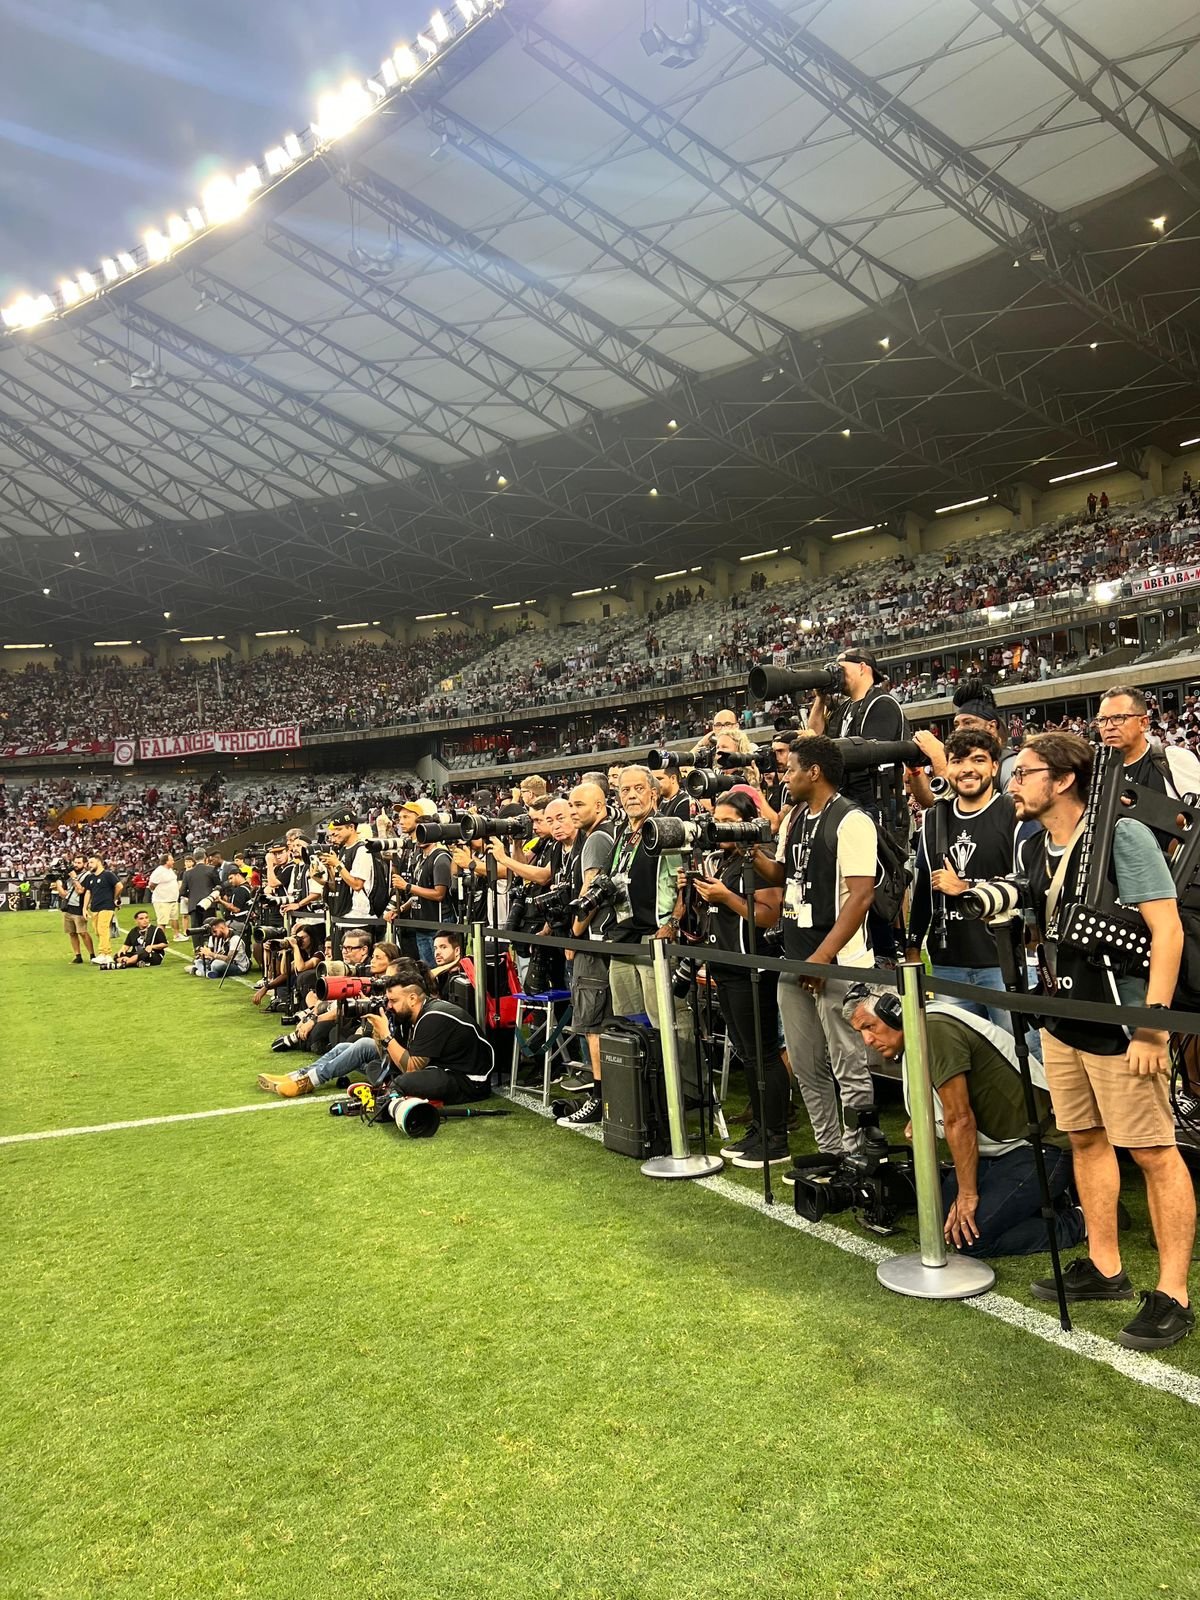 lateral do grmado do estádio com vários fotógrafos